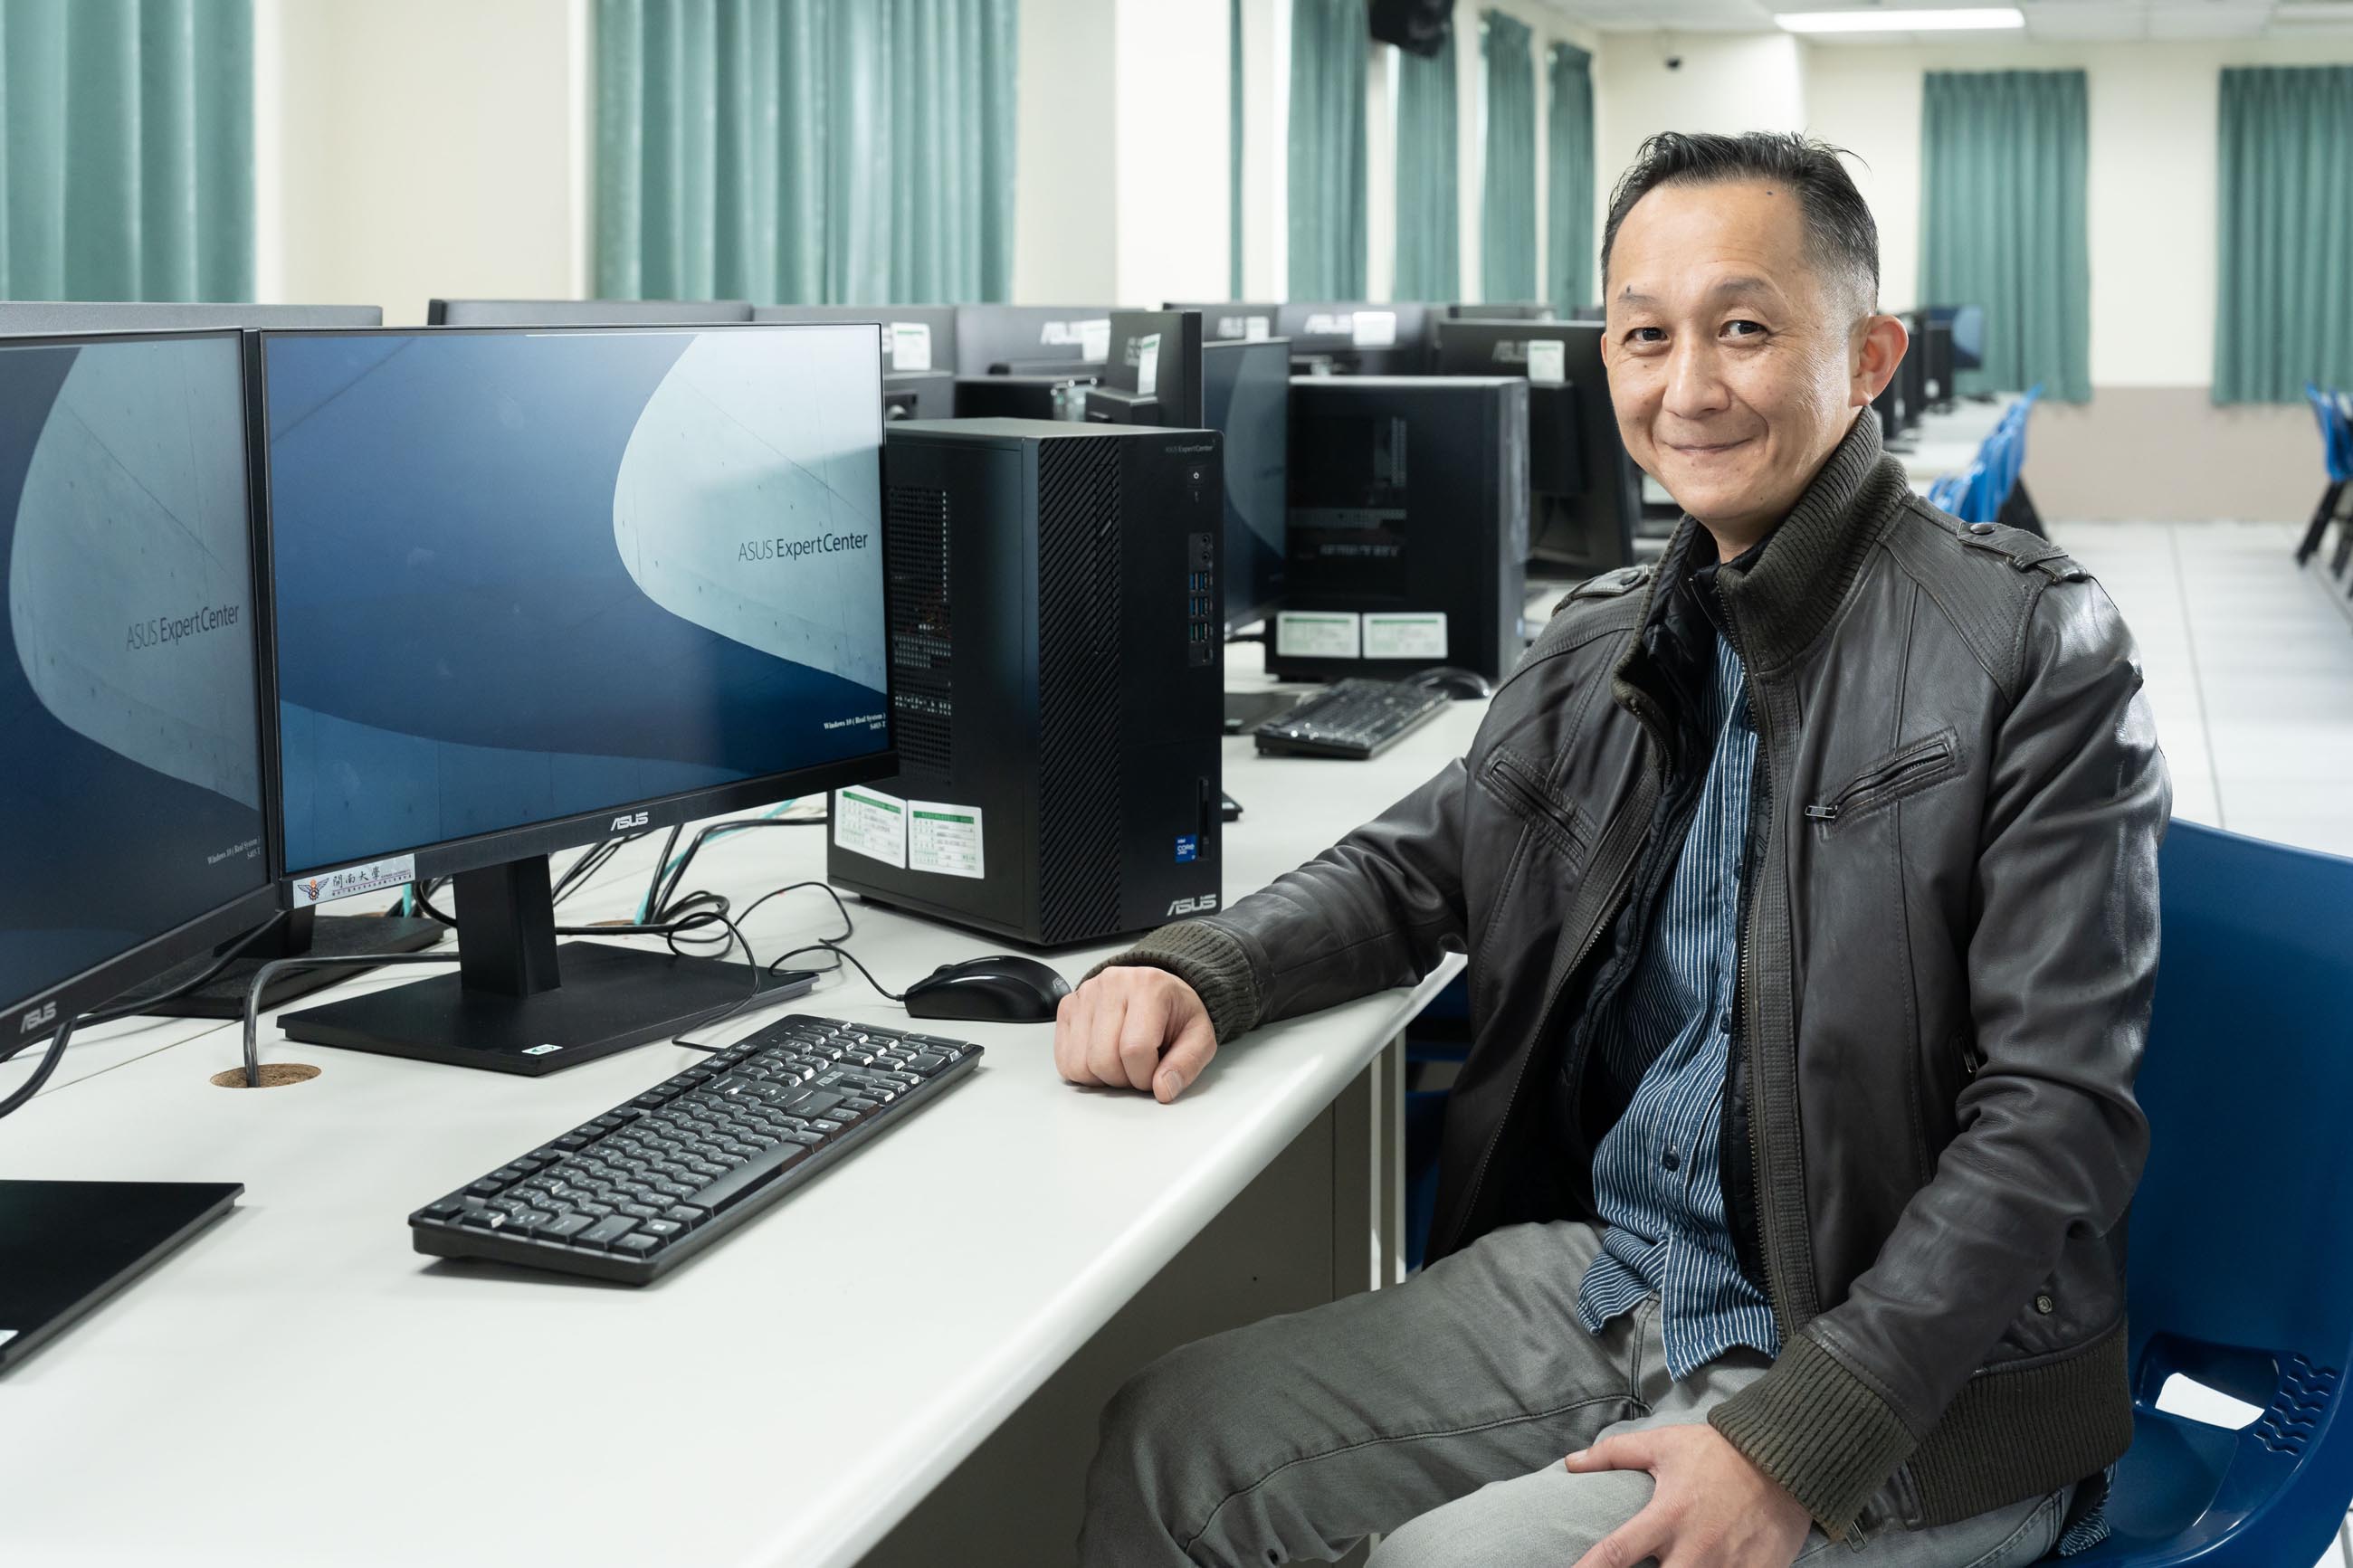 開南大學電影與創意媒體學系黃國賢老師強調，電腦硬體在3D領域直接關乎教學內容和品質。升級為ASUS ExpertCenter M9 Mini Tower後，讓他更能放心開課教授最新技術。